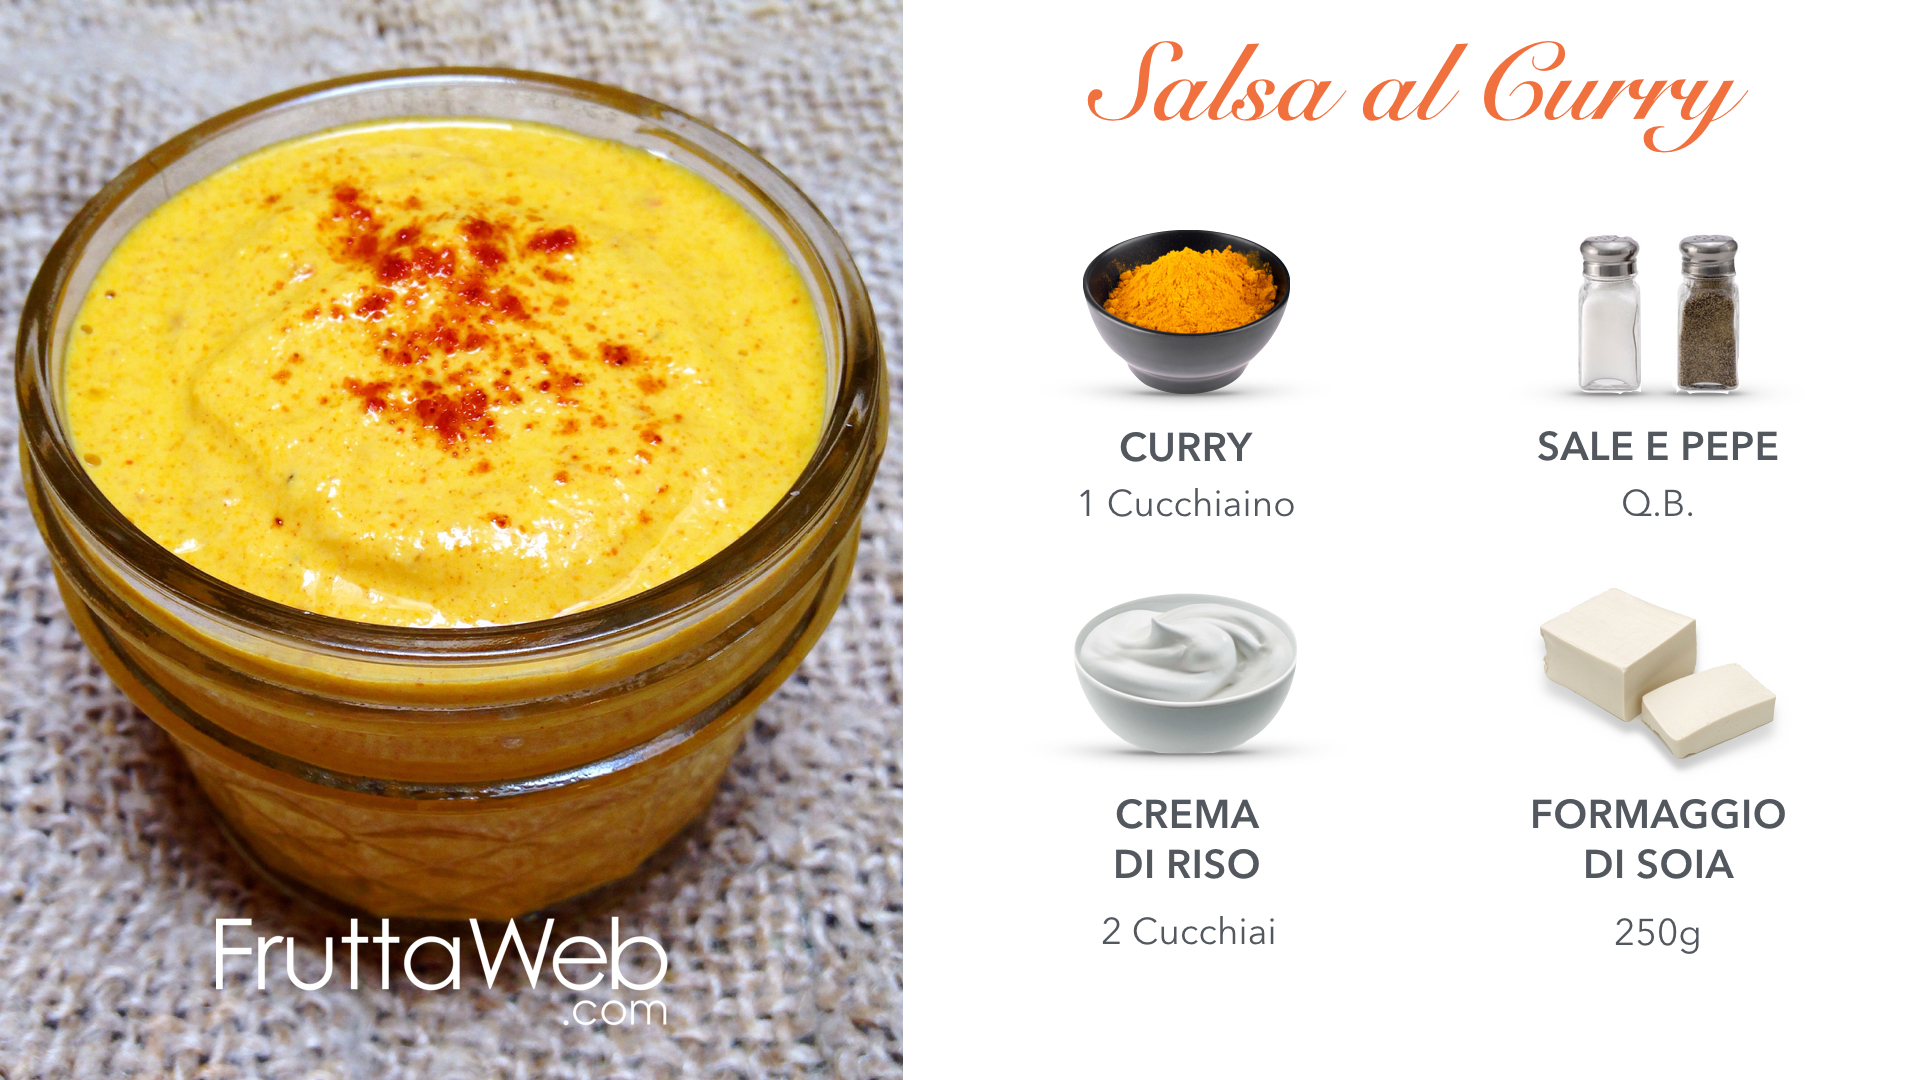 salsa al curry - FruttaWeb blog